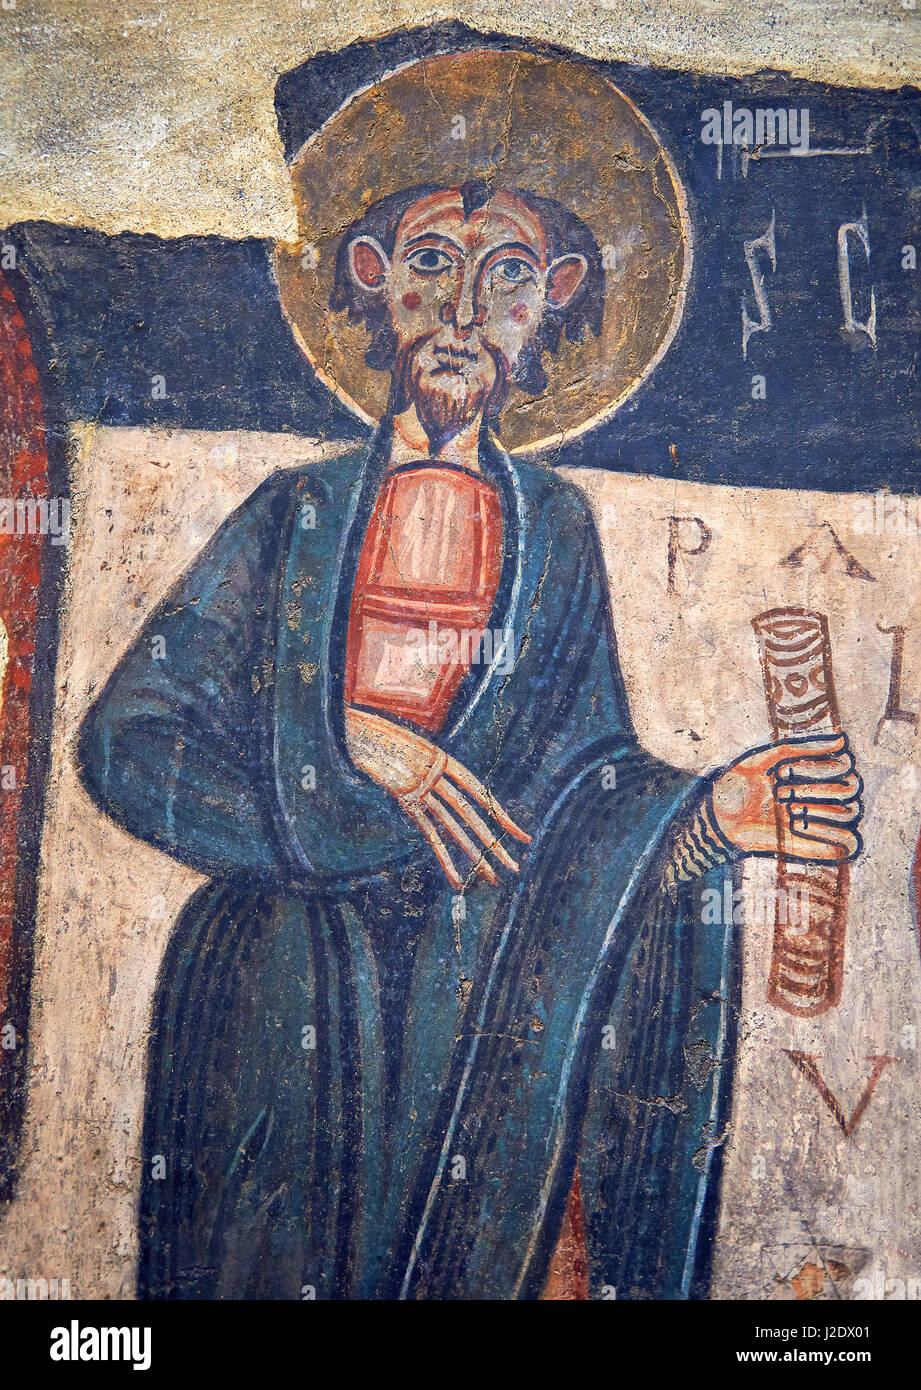 Romanische Fresken des Heiligen Paulus von der Kirche von Sant Roma de Les Bons, gemalt um 1164, Encamp, Andorra. Nationalen Kunstmuseum von Katalonien, Stockfoto